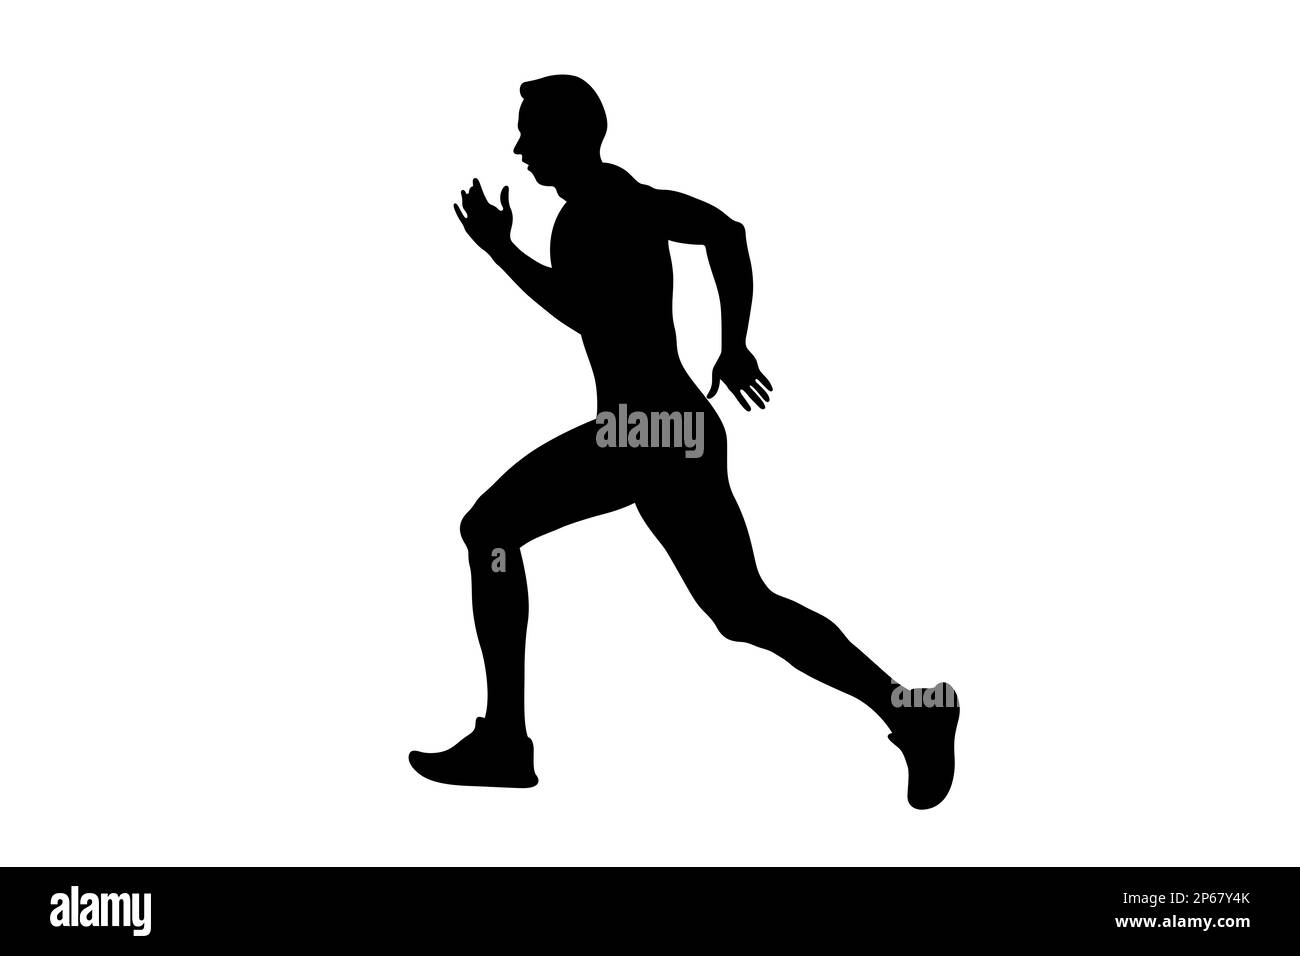 black silhouette man runner run on white background Stock Photo